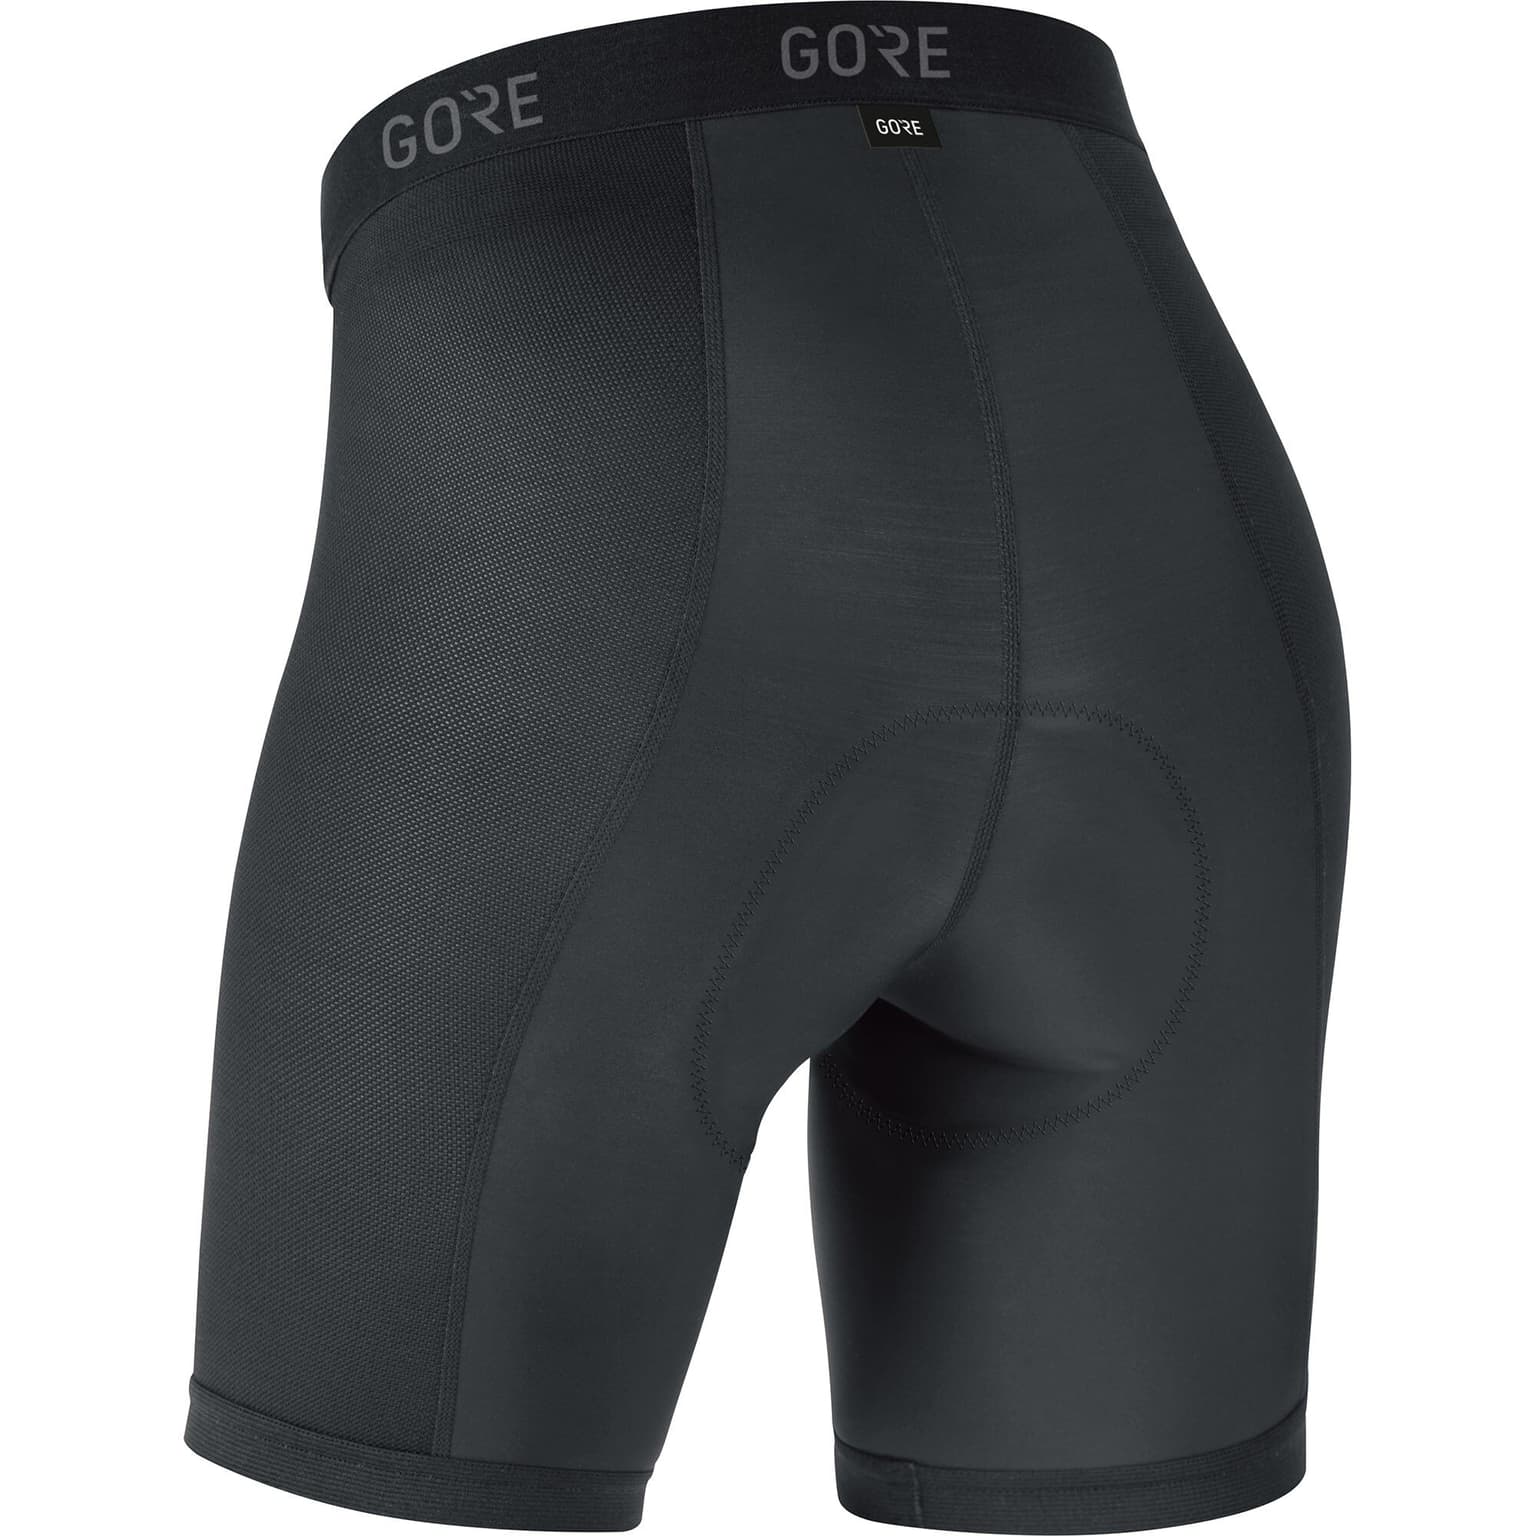 Gore Gore C3 Liner Short Tights+ Bike-Unterhose schwarz 2